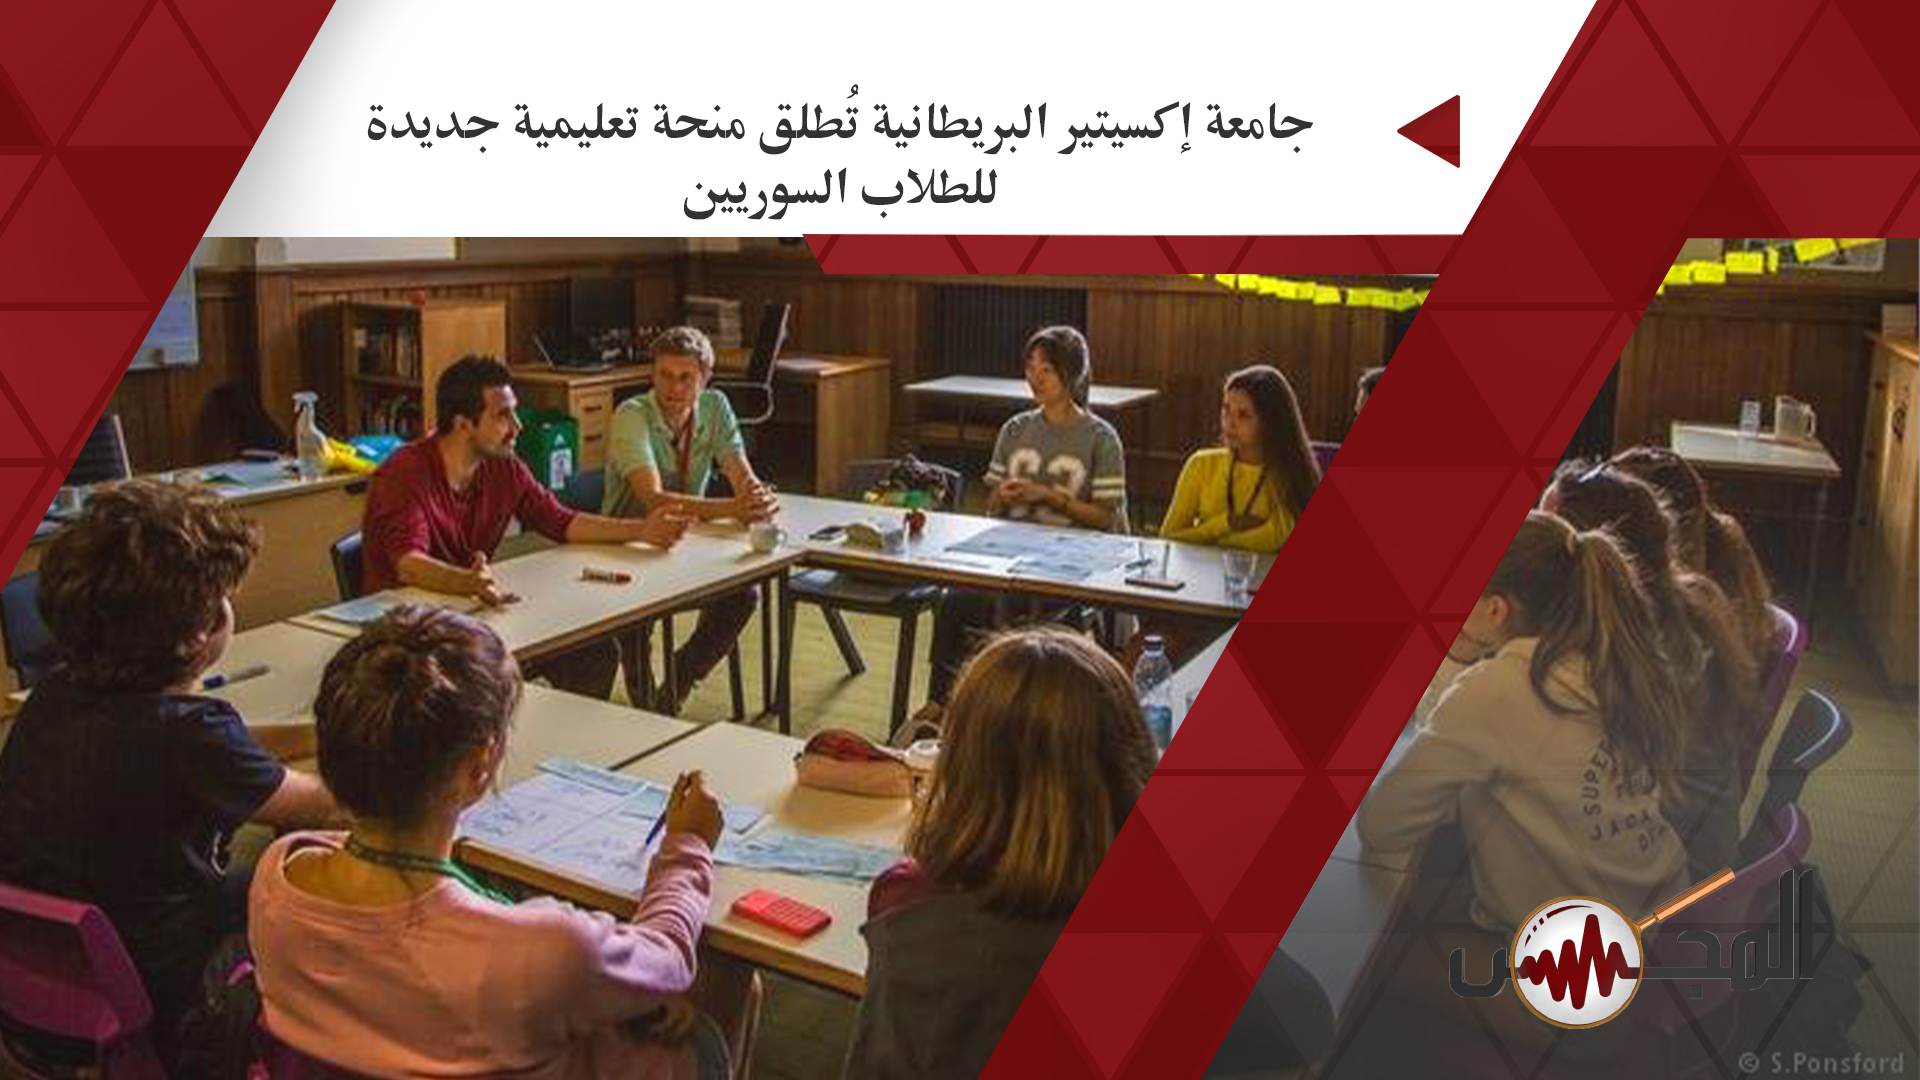 جامعة إكسيتير البريطانية تُطلق منحة تعليمية جديدة للطلاب السوريين 